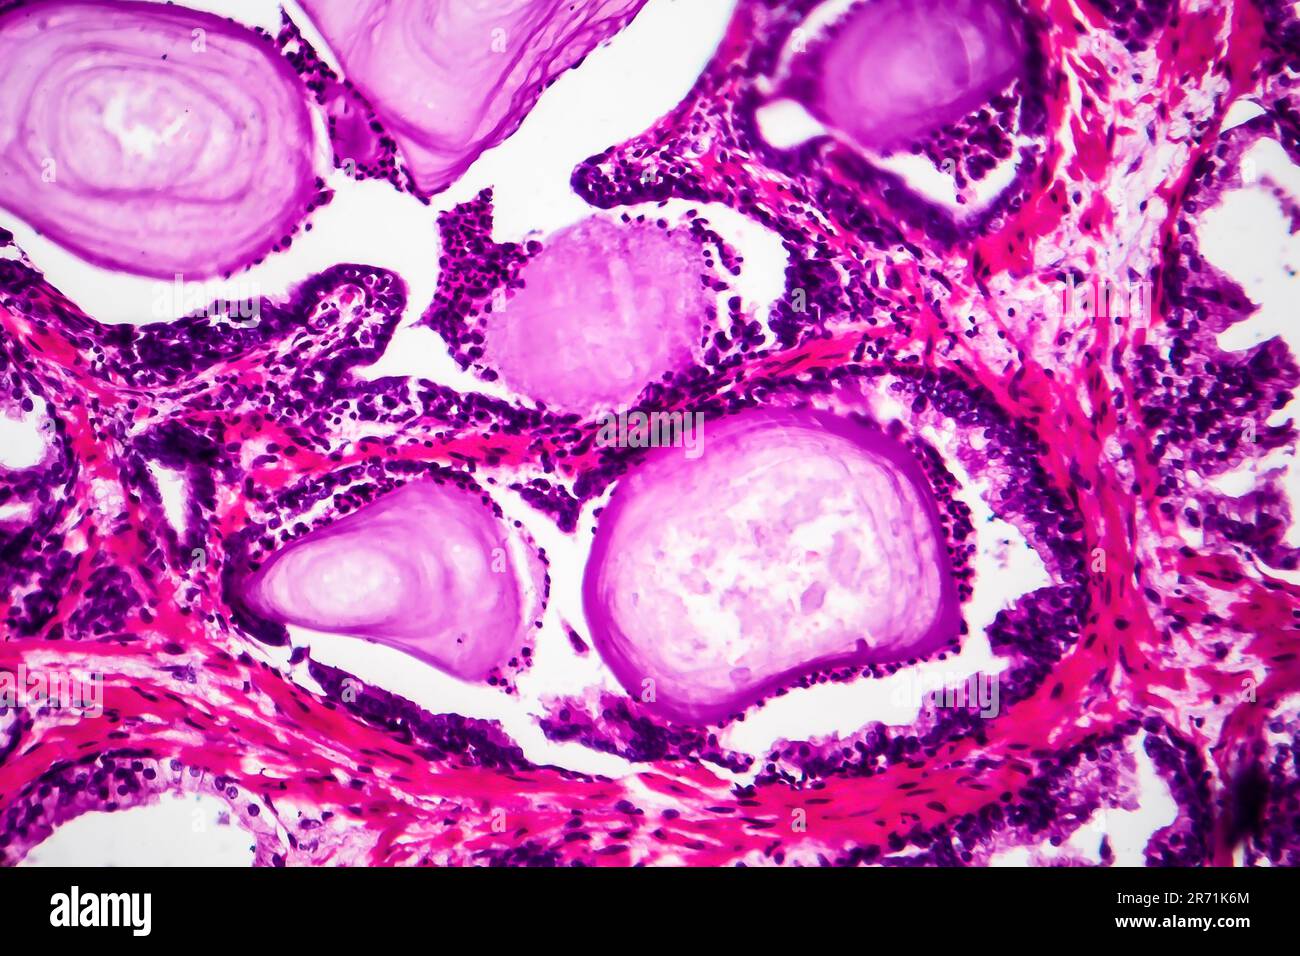 Hiperplasia prostática benigna, micrografía de luz, foto al microscopio que muestra glándulas dilatadas, acumulación de material secretorio Foto de stock